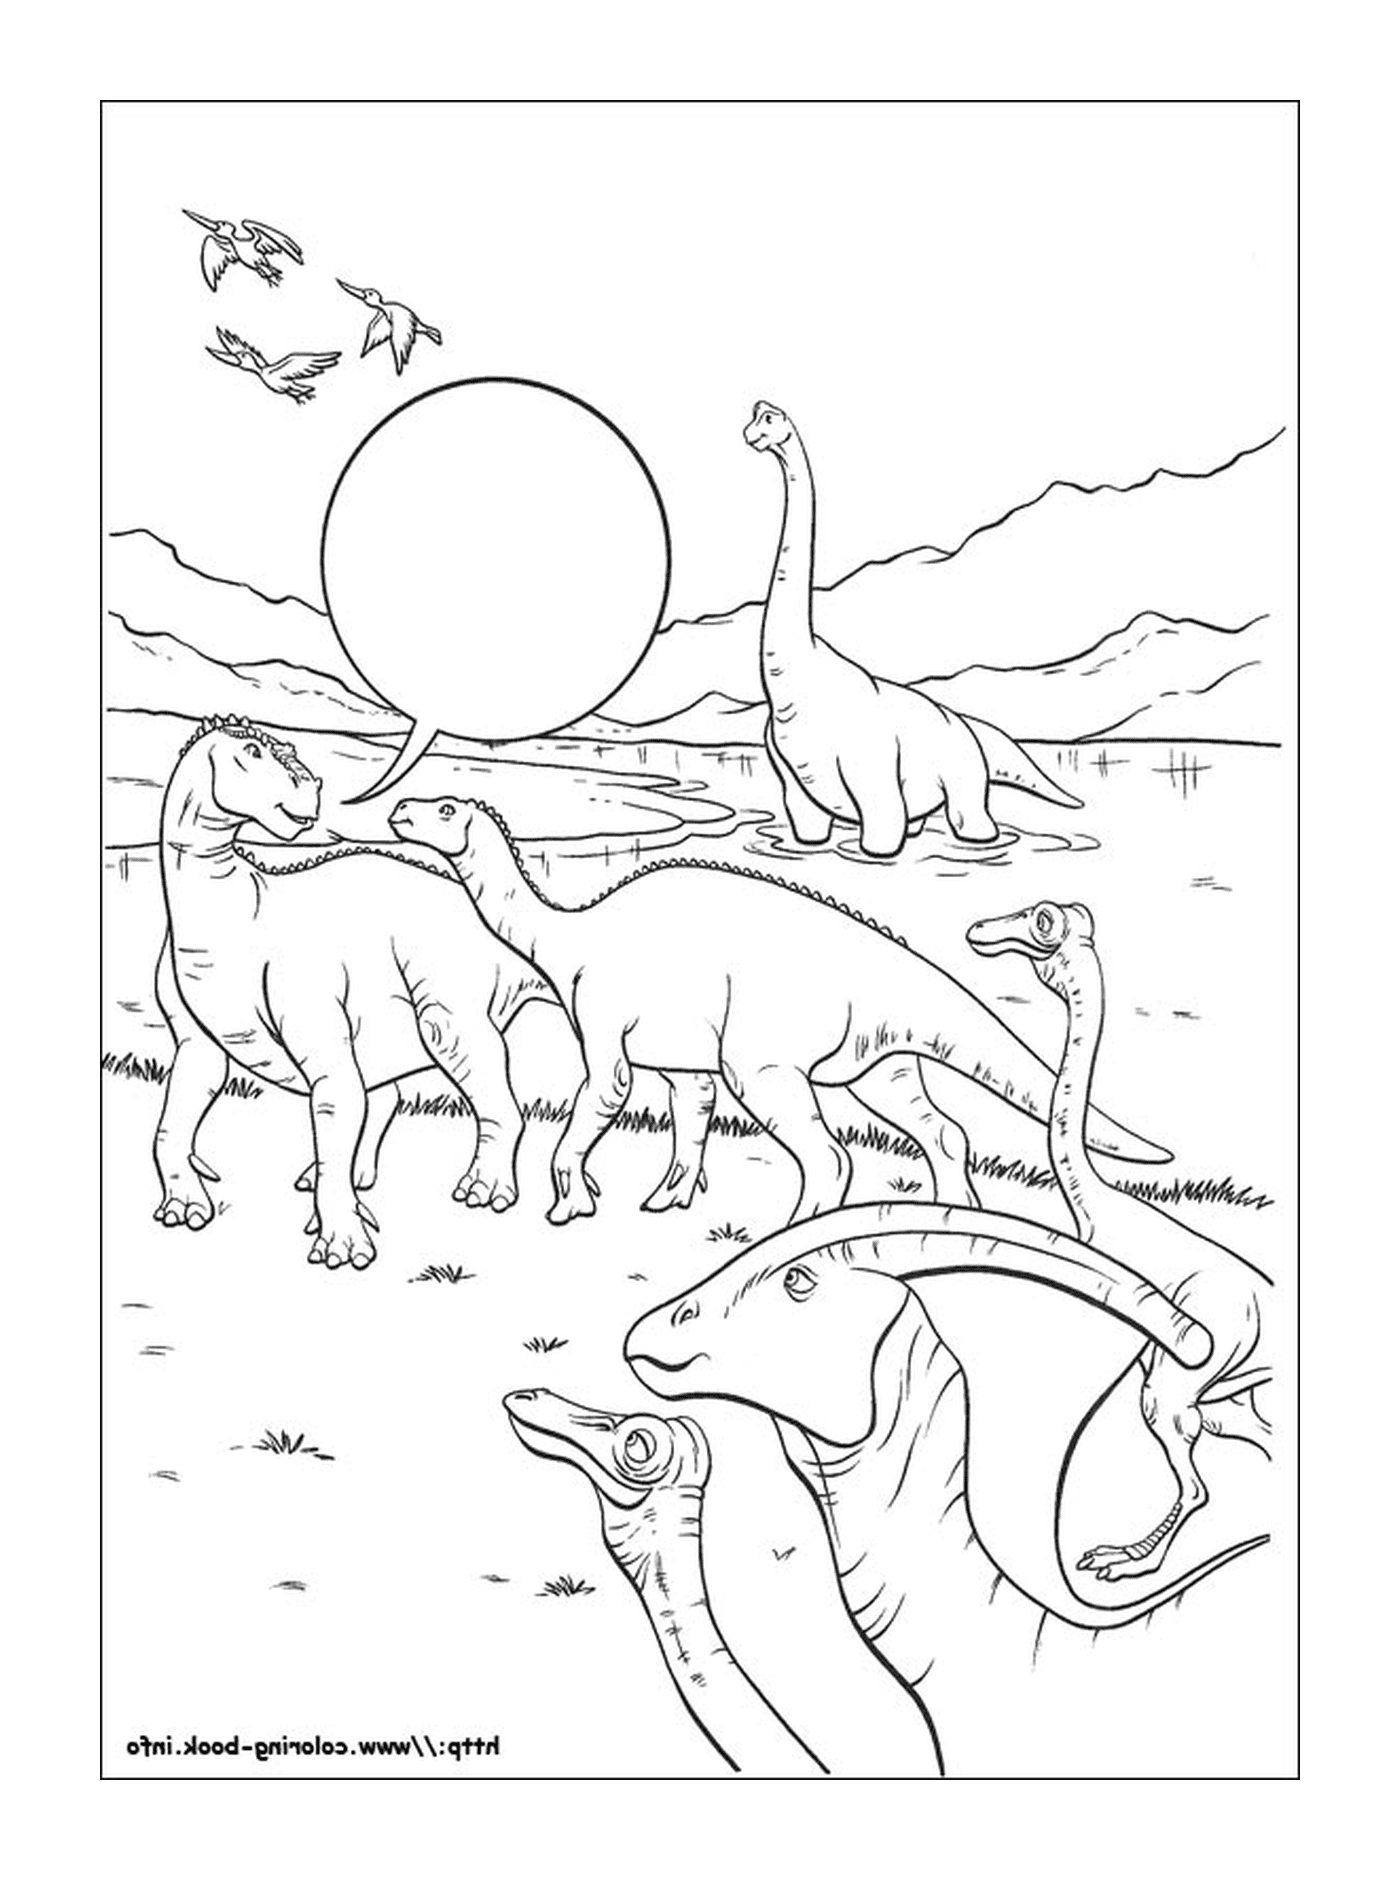  Viele Dinosaurier in diesem Bild sichtbar 